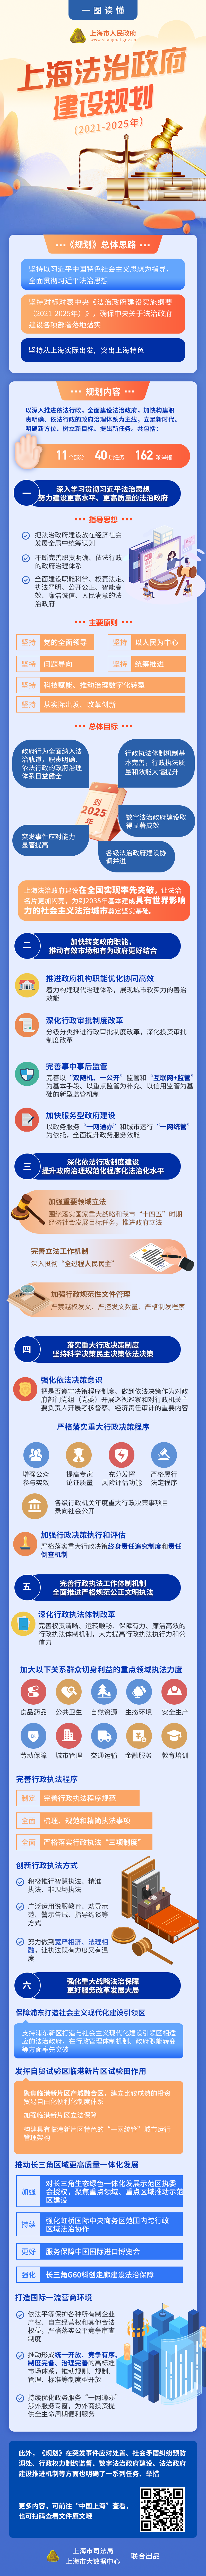 一图读懂《上海法治政府建设规划（2021-2025年）》.png